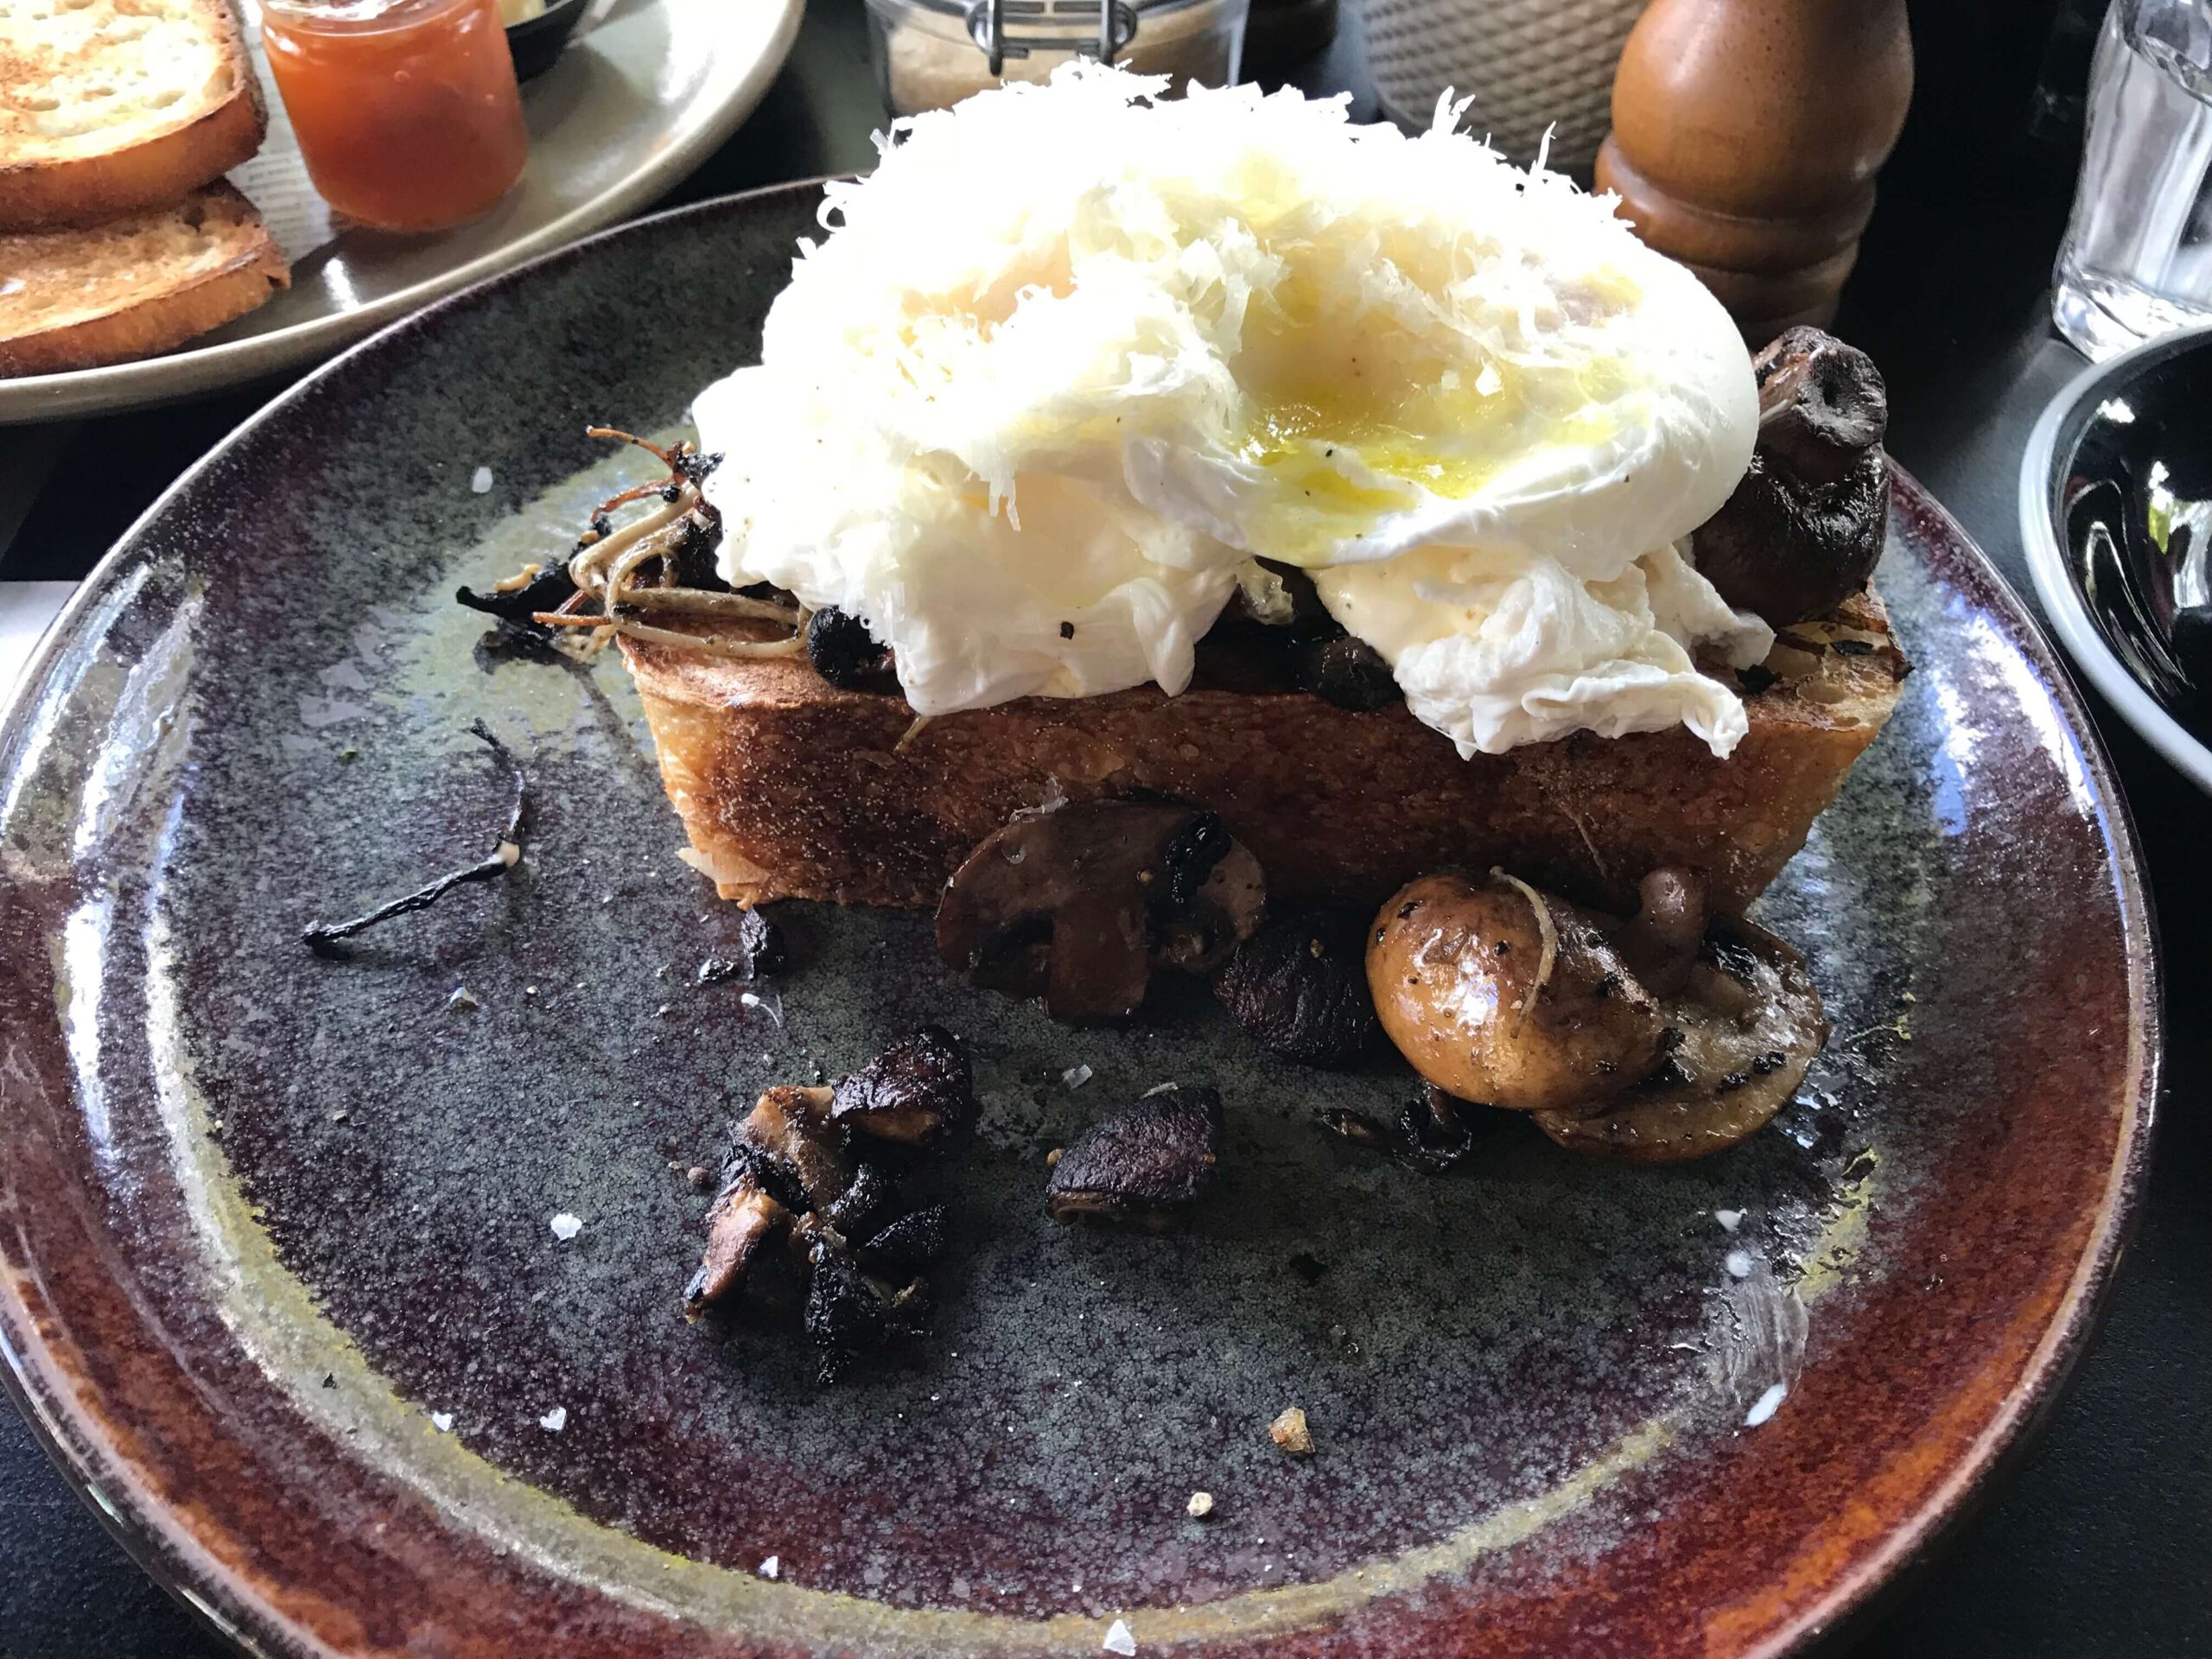 シドニーのカフェ【Social Brew Cafe】の朝食メニュー「Mushroom and Parmesan Bruschetta（マッシュルームアンドパルメザンブルスケッタ）」を撮影した写真